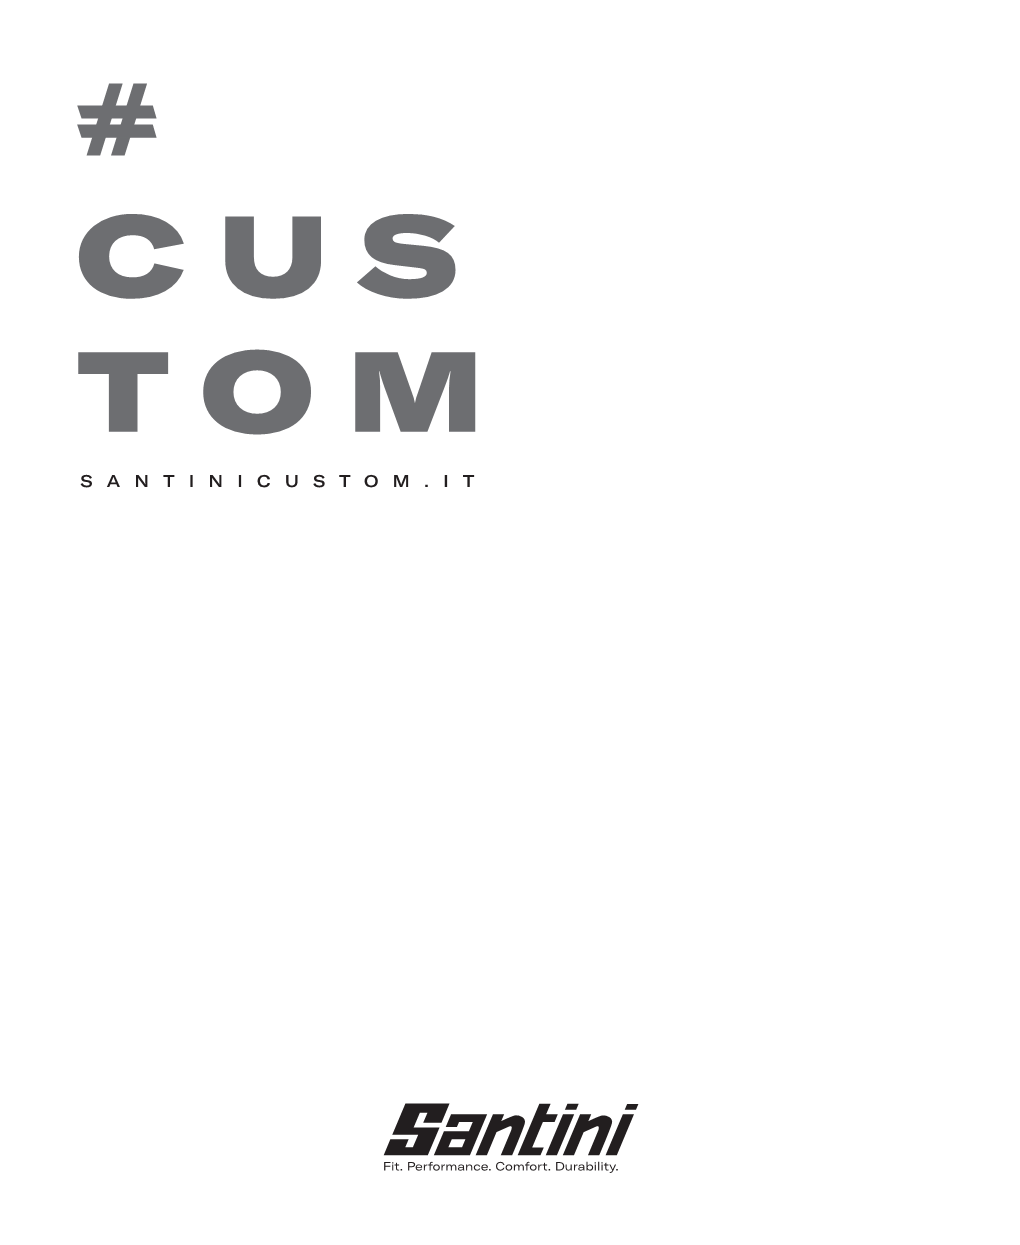 Cus Tom Santinicustom.It Santini Premium Custom Clothing